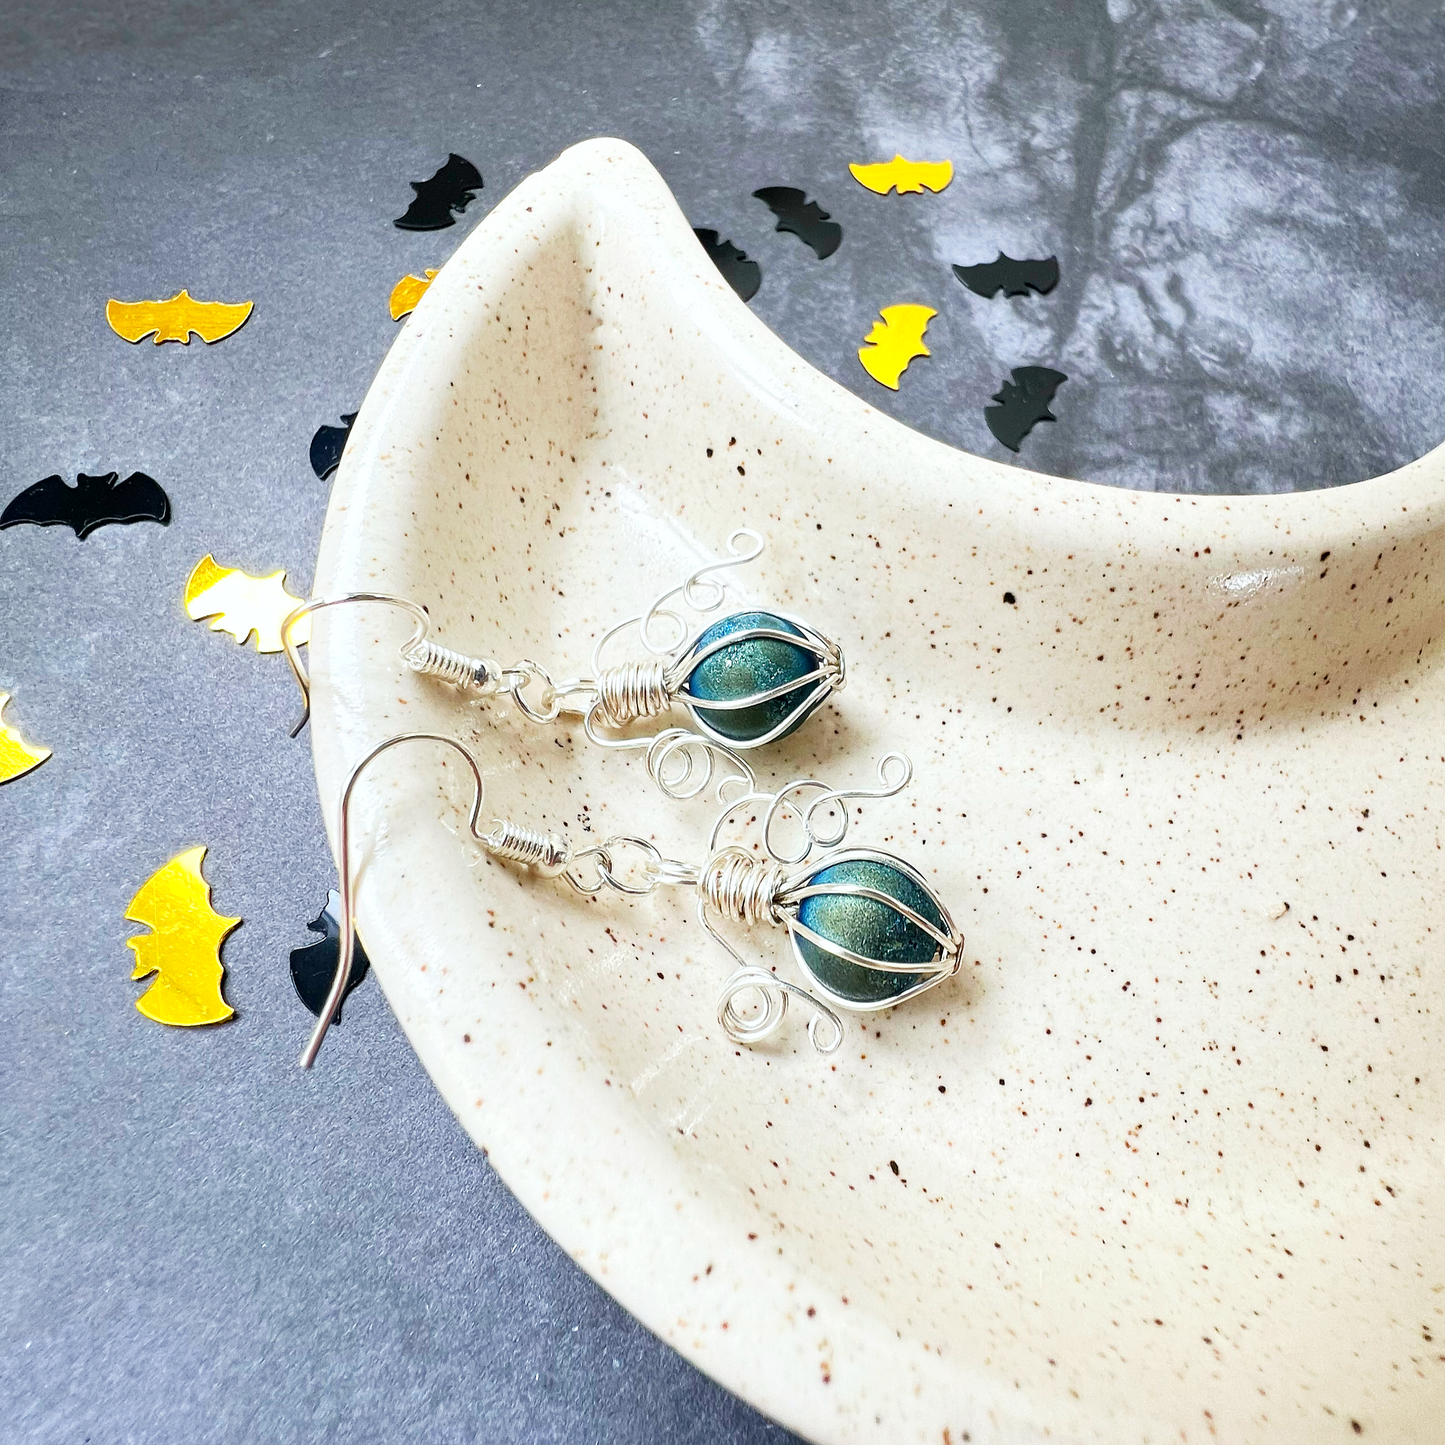 Blue/Green Druzy pumpkin earrings in silver